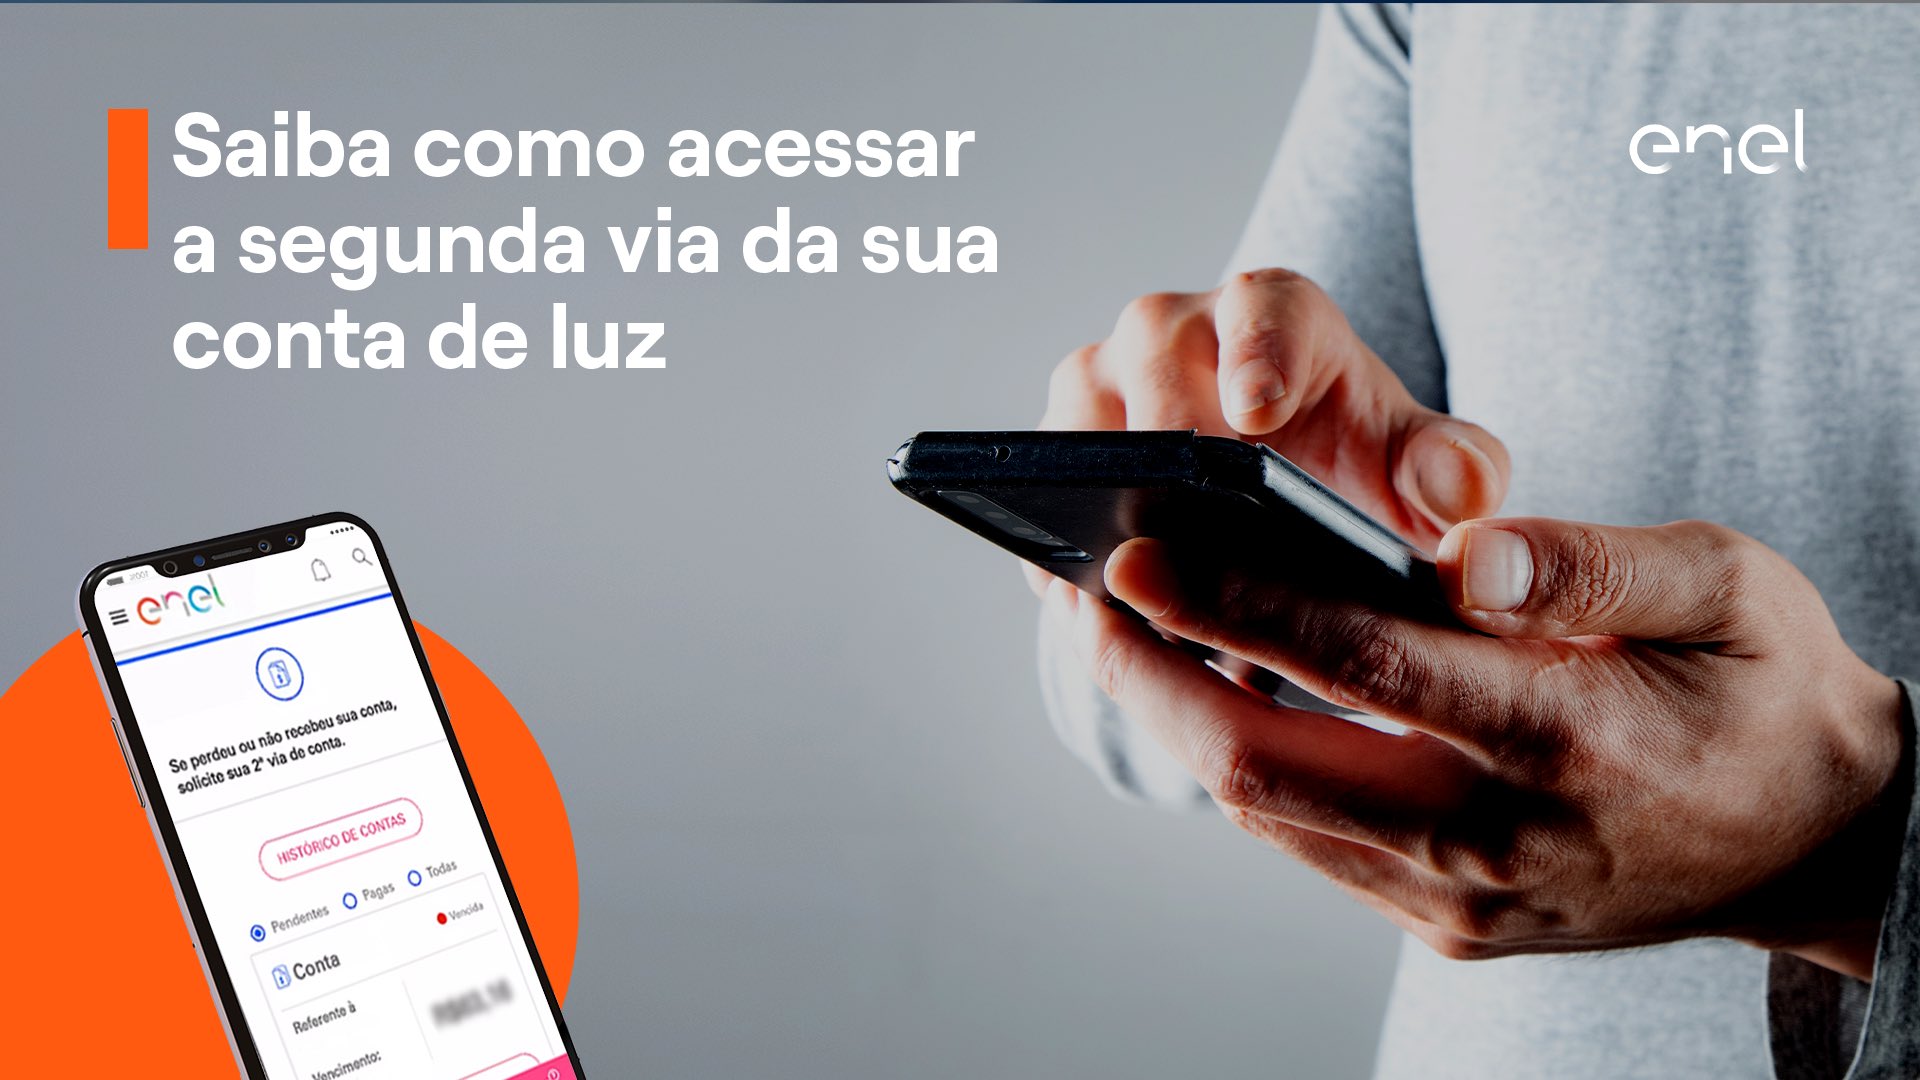 Enel Clientes Brasil on X: Tenha acesso à segunda via da sua fatura de  forma fácil e rápida, sem sair de casa. Você pode solicitar pela agência  virtual, aplicativo Enel (disponível para